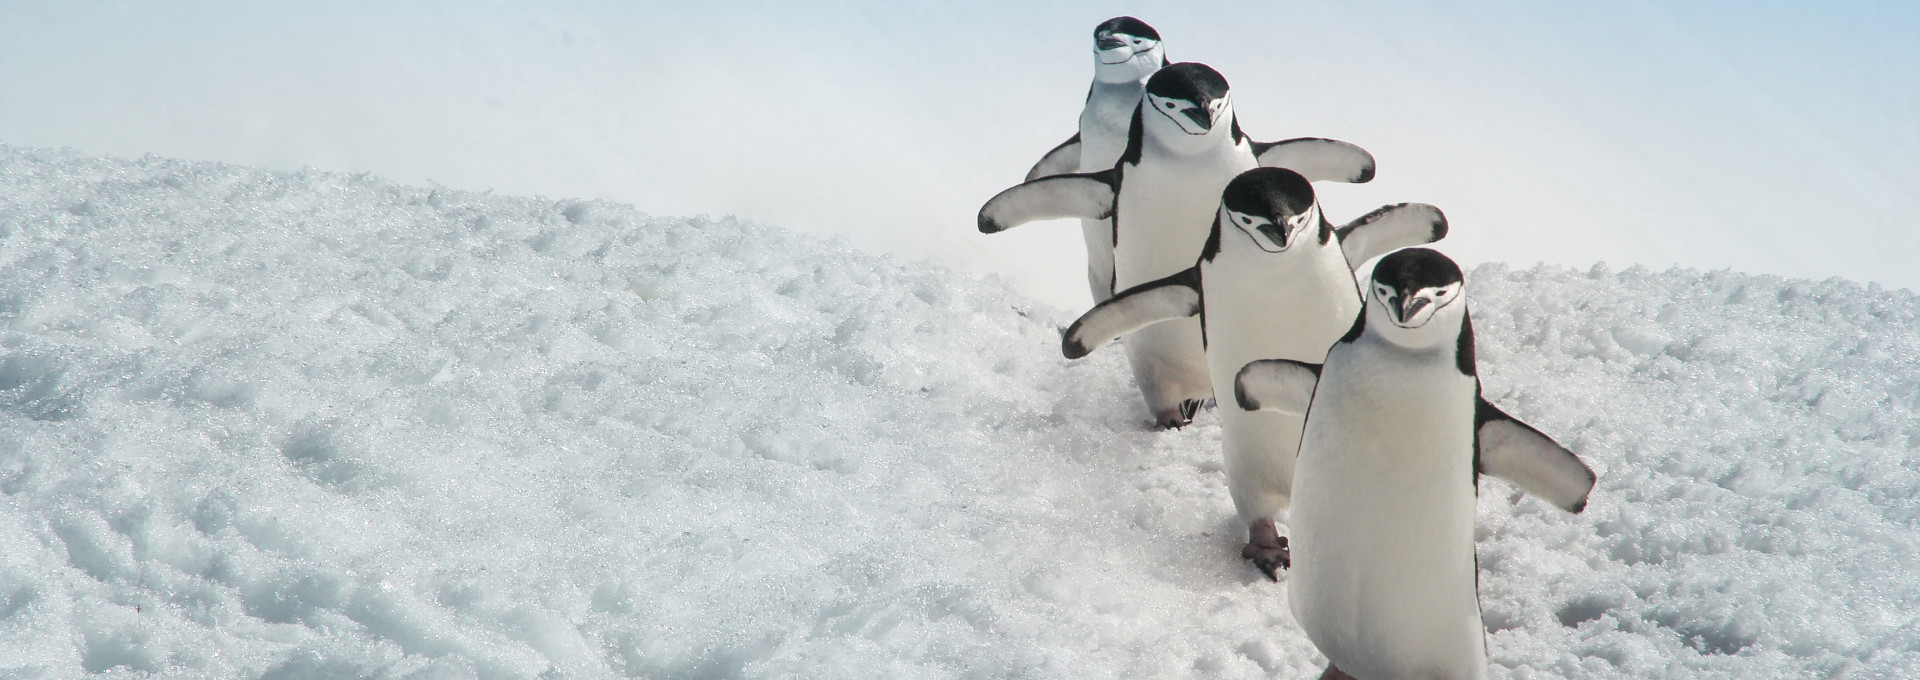 Eine Gruppe von vier Pinguinen geht über eine mit eisbedeckte Landschaft.